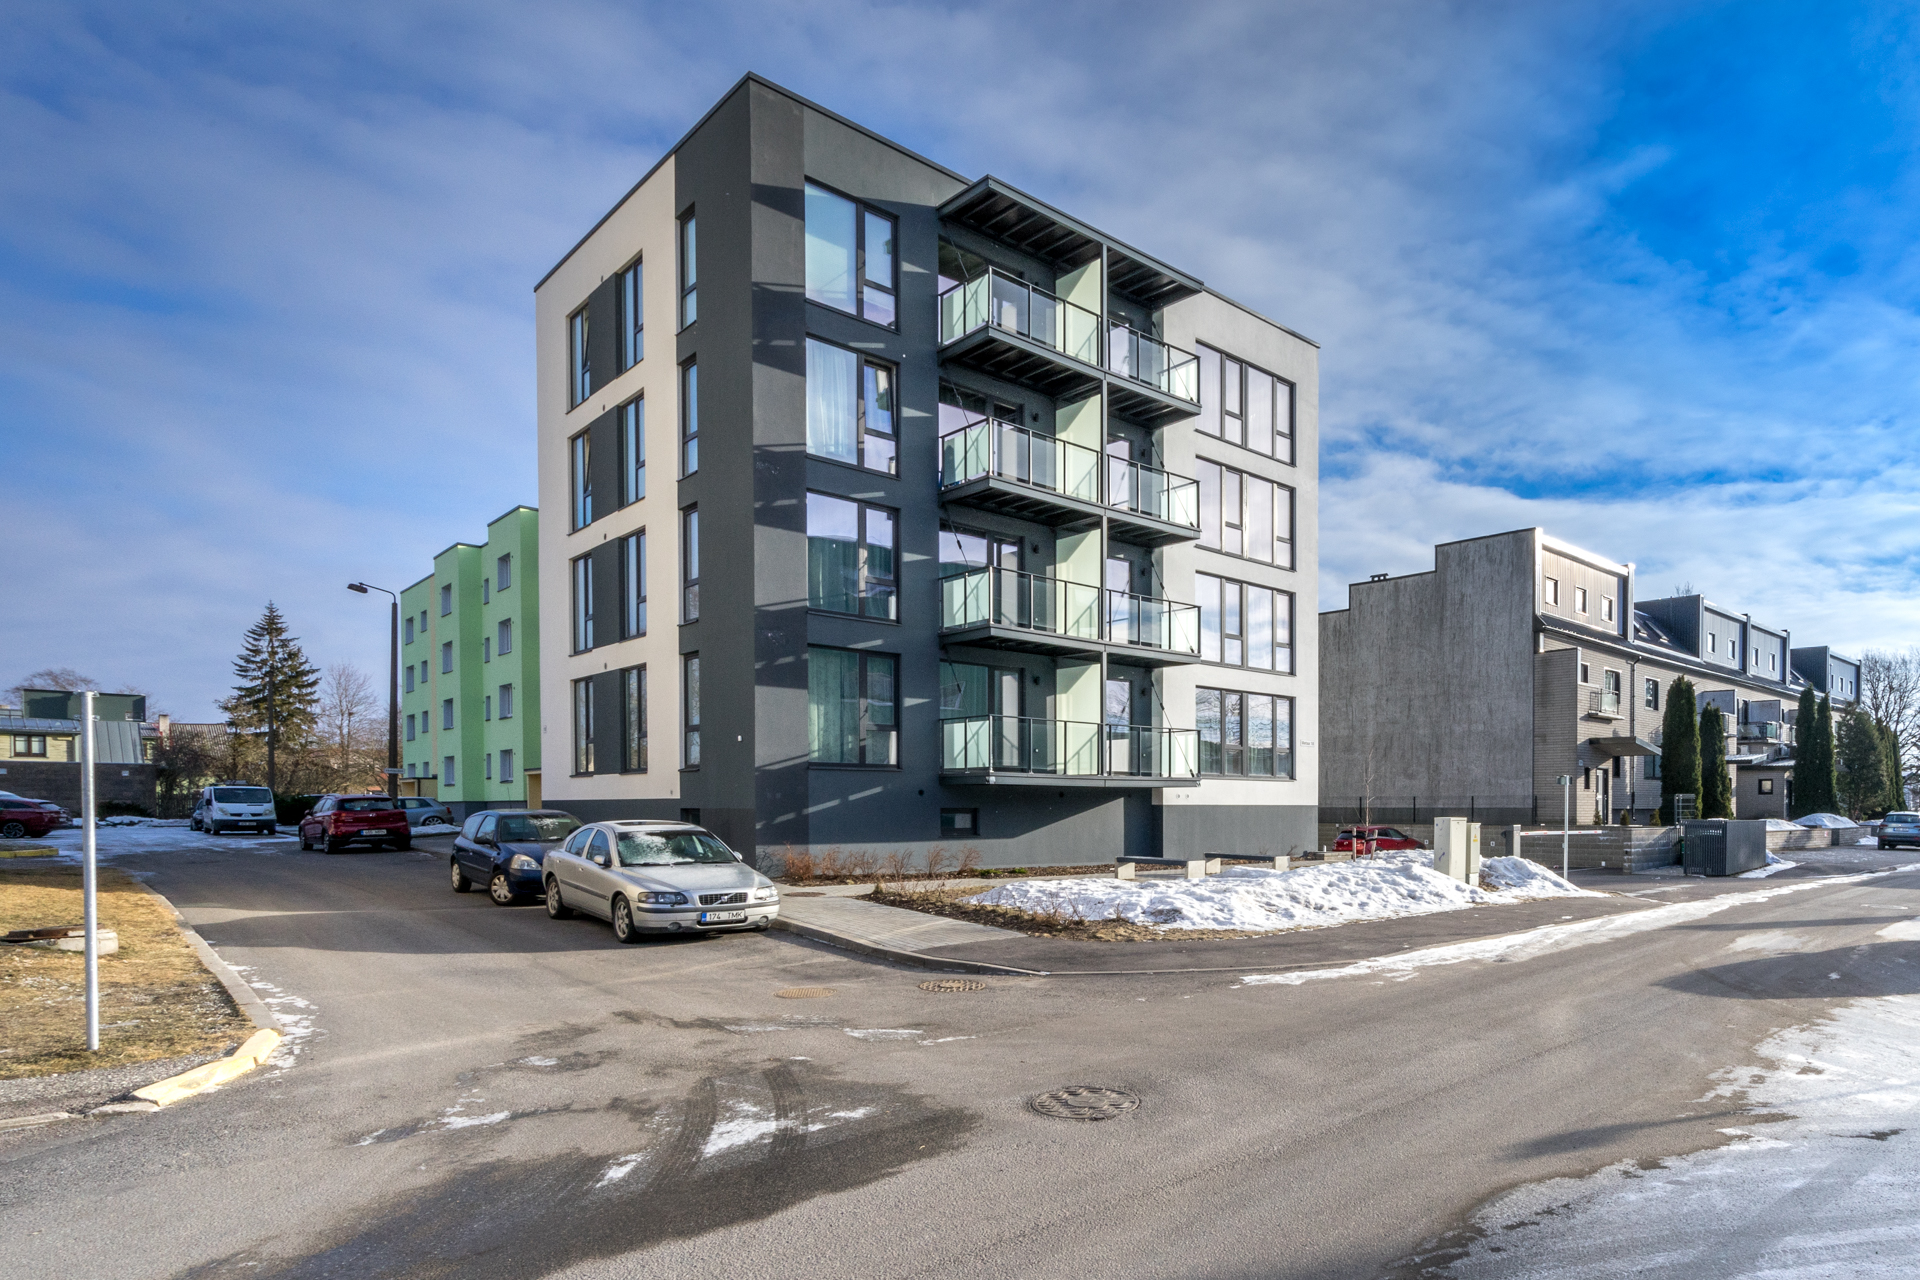 Müüa uus 4-toaline korter Pärnus, A-energiamärgisega elamus Metsa tn 18, Mai piirkonnas.